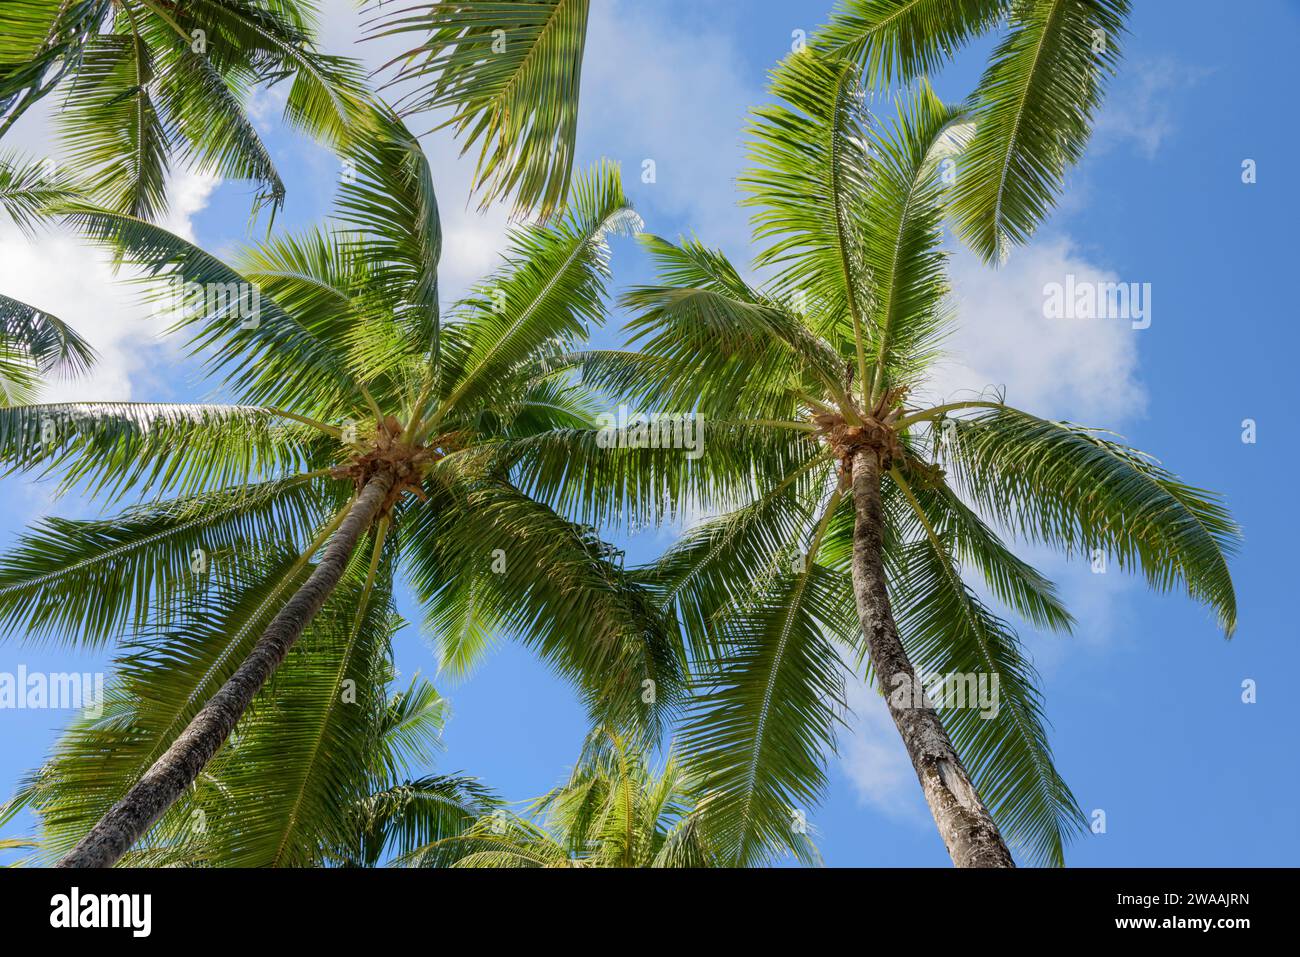 Cocotiers cotiers richement à un ciel bleu, île de Praslin, Seychelles. Océan Indien Banque D'Images